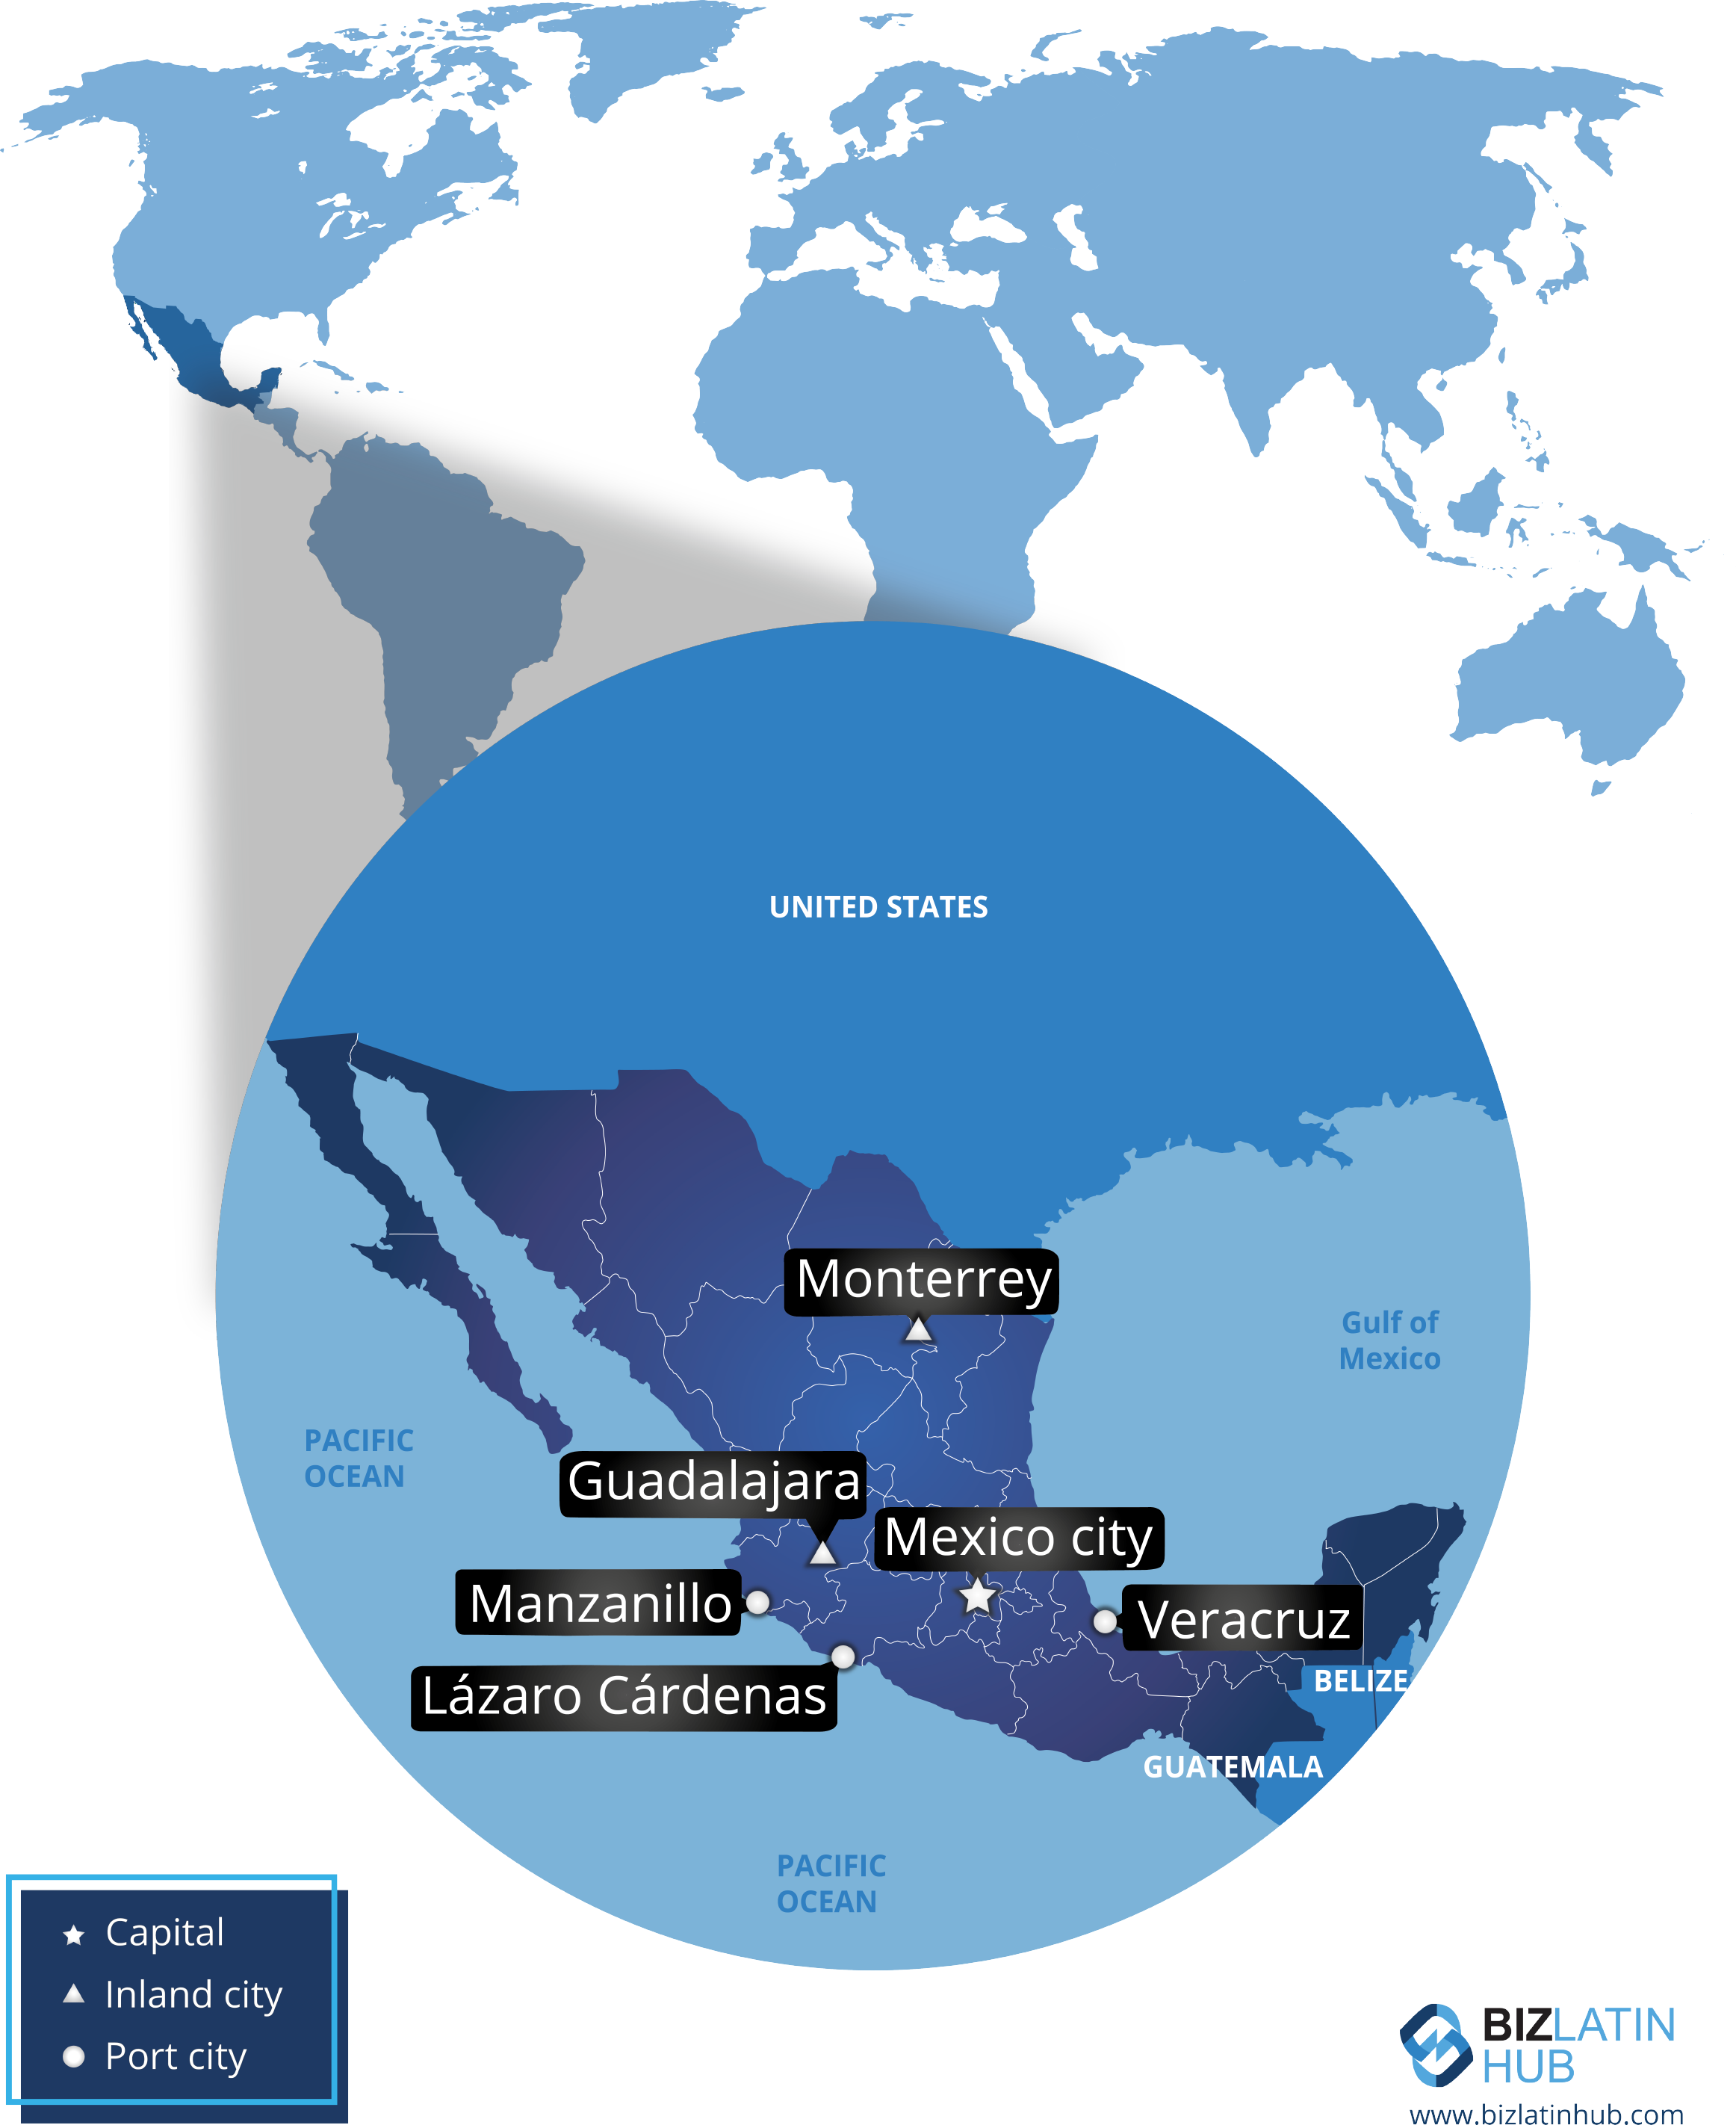 Ubicación geográfica de México y sus principales ciudades